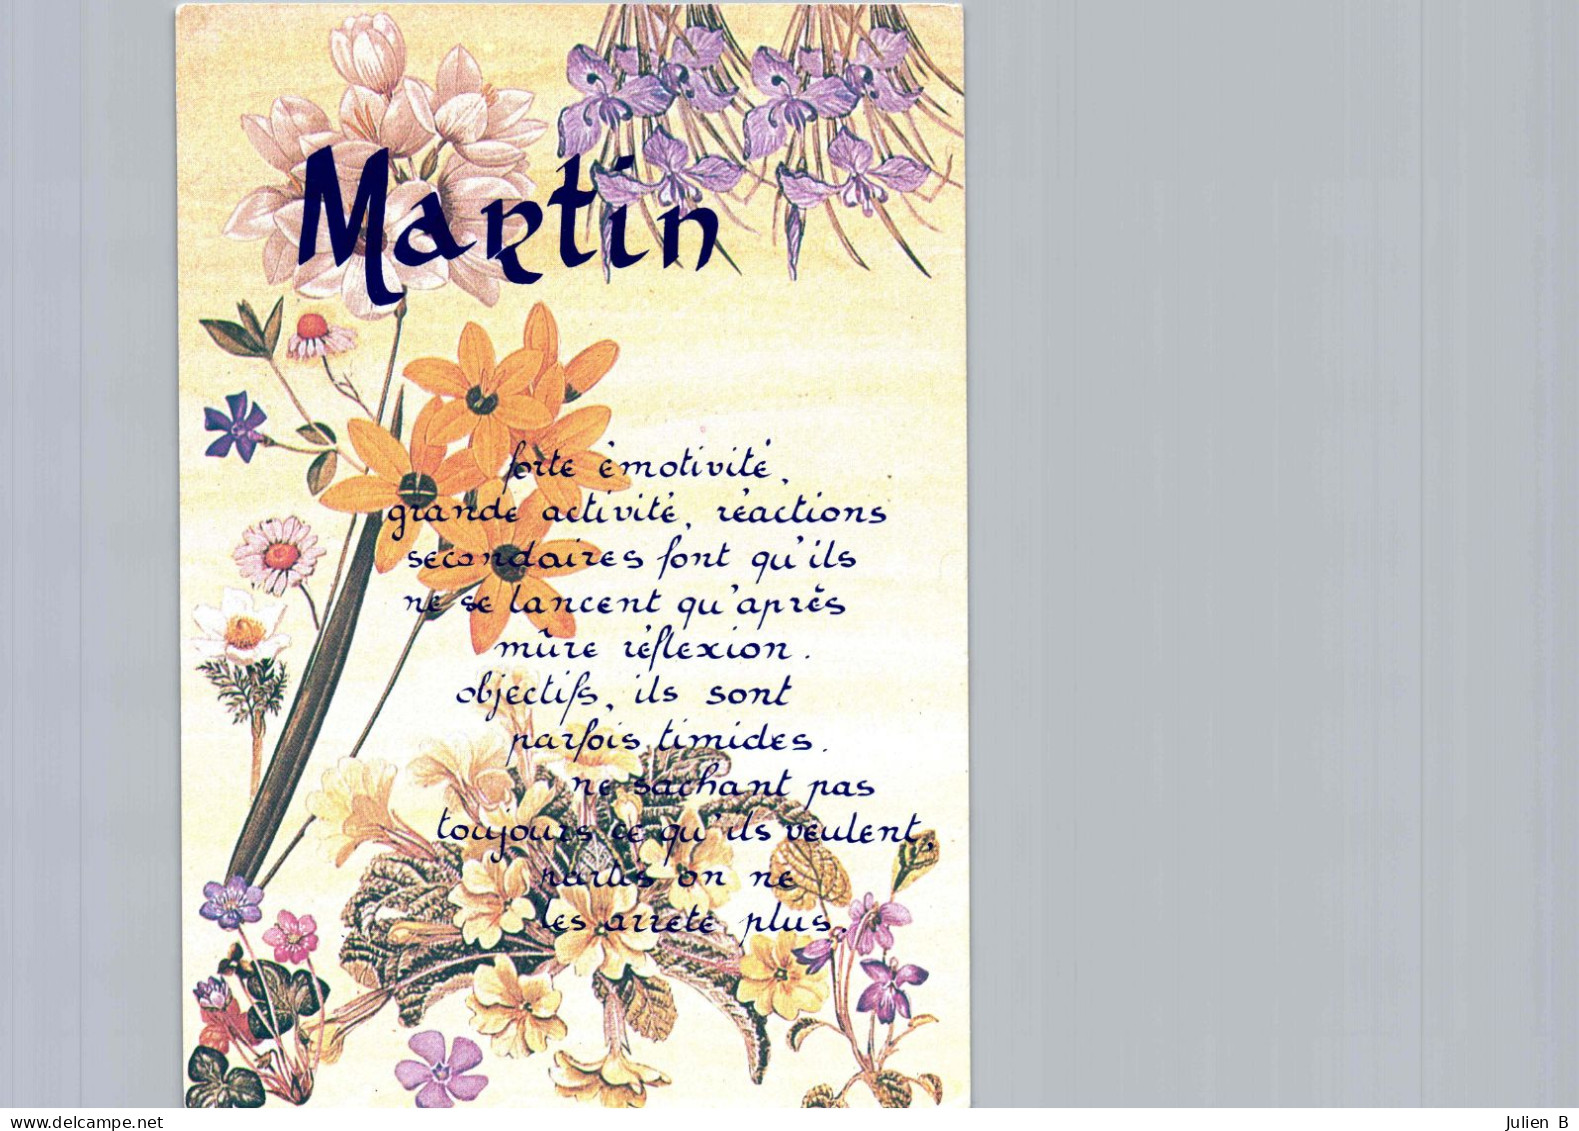 Martin, Edition ICDF - Prénoms